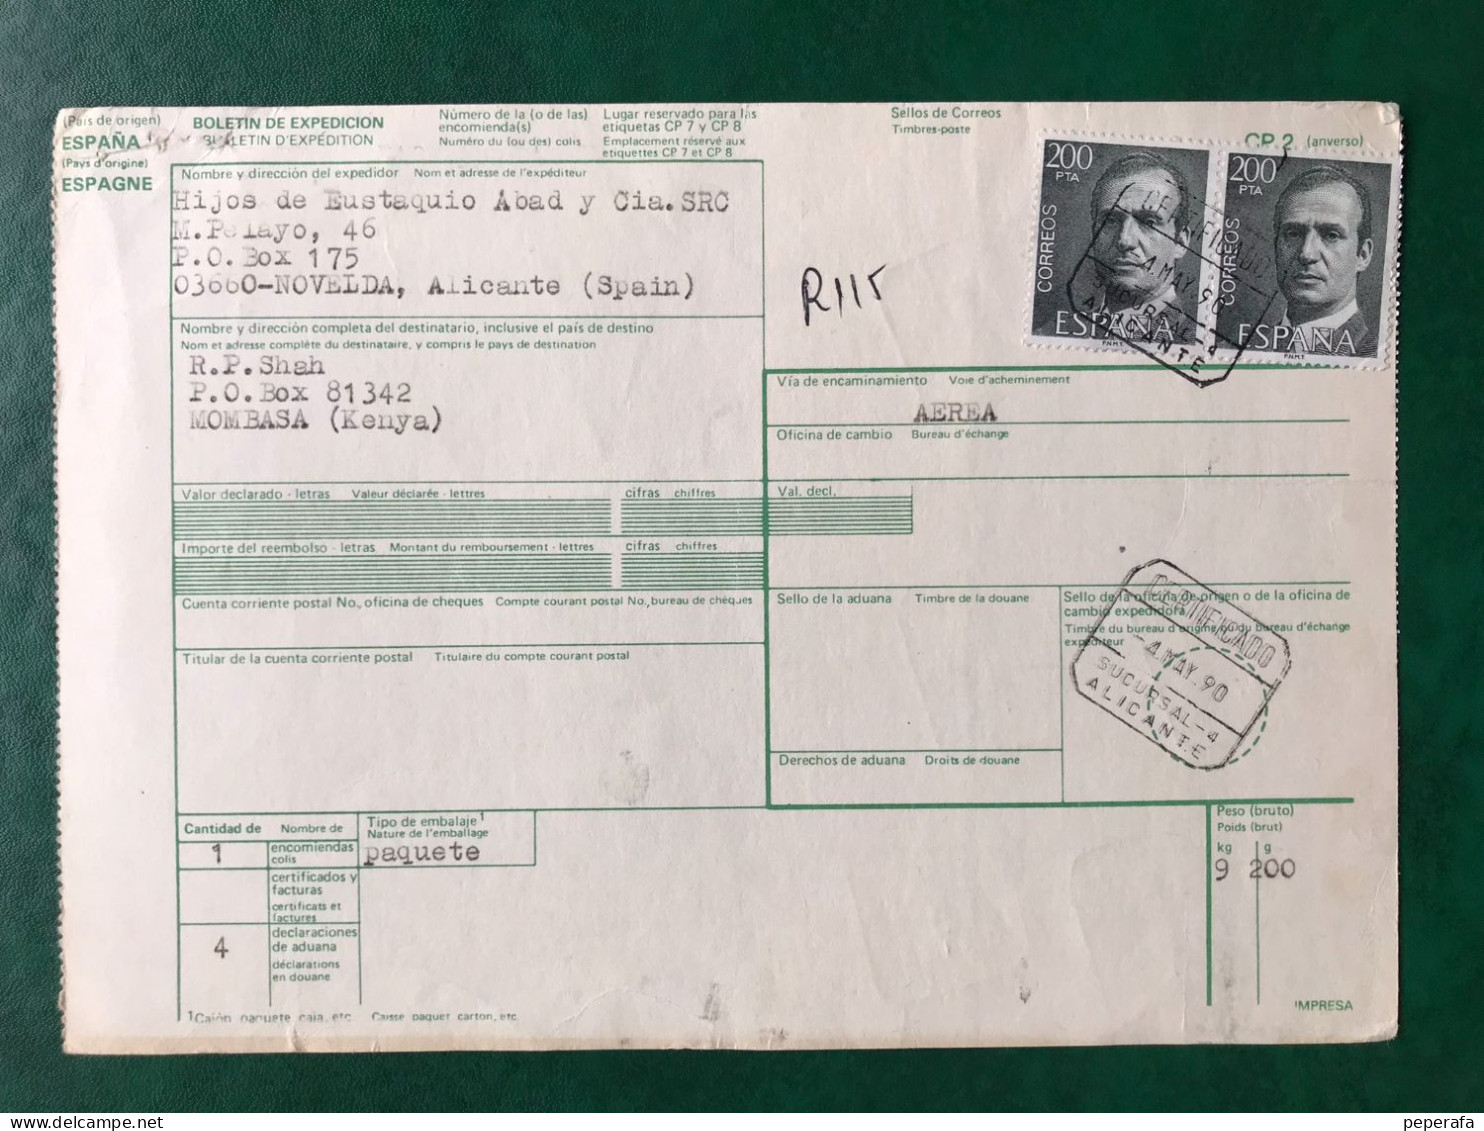 España Spain 1990, DOCUMENTO POSTAL BOLETÍN DE EXPEDICIÓN 3400 PTS, Postmark Cancel, RARO!!! - Automatenmarken [ATM]